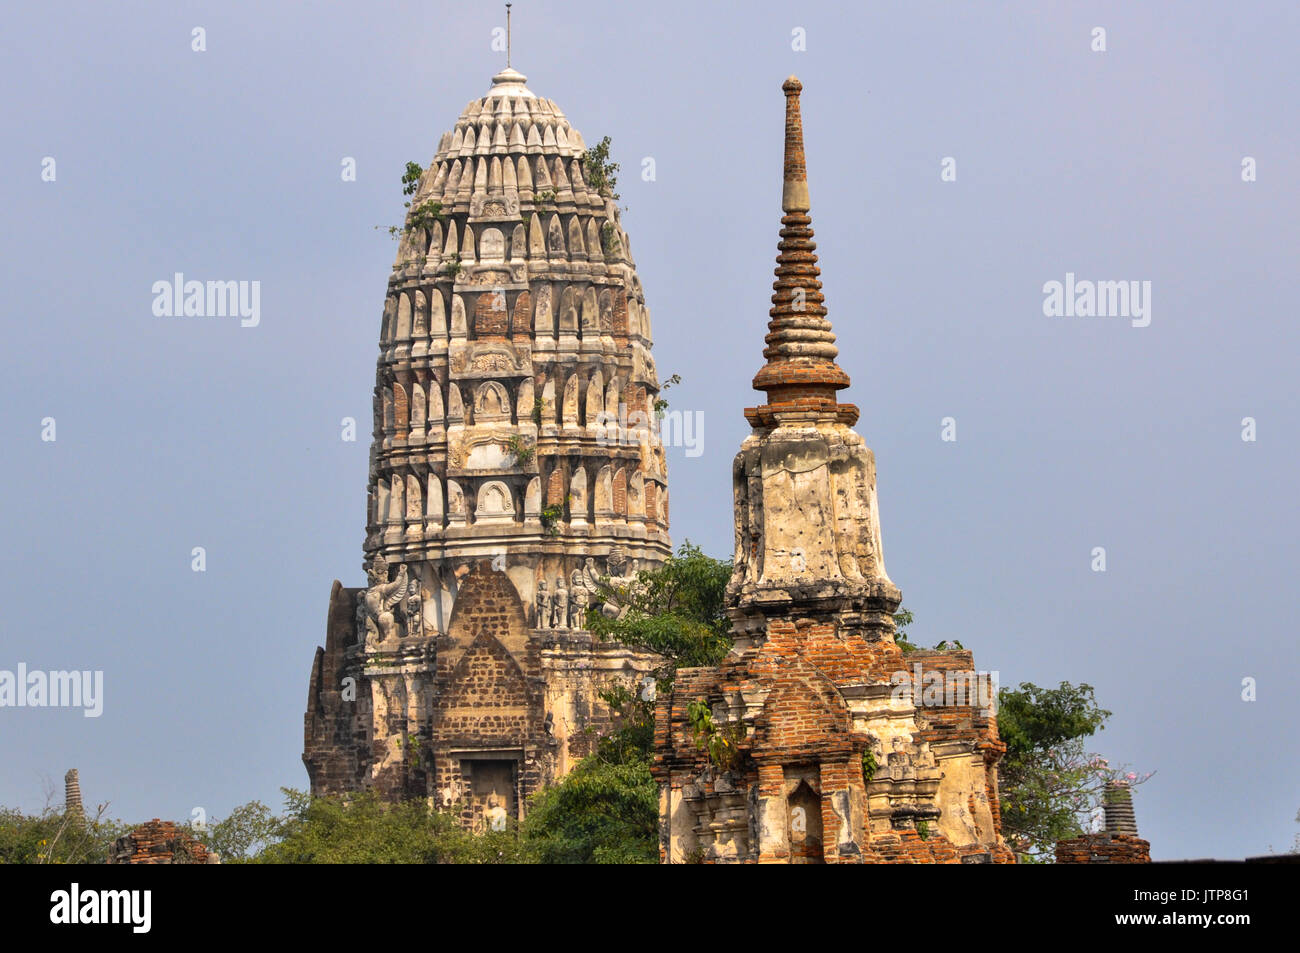 Le rovine della vecchia città di Ayutthaya nel Patrimonio Mondiale dell'UNESCO, al parco storico di Ayutthaya, Thailandia. Foto Stock